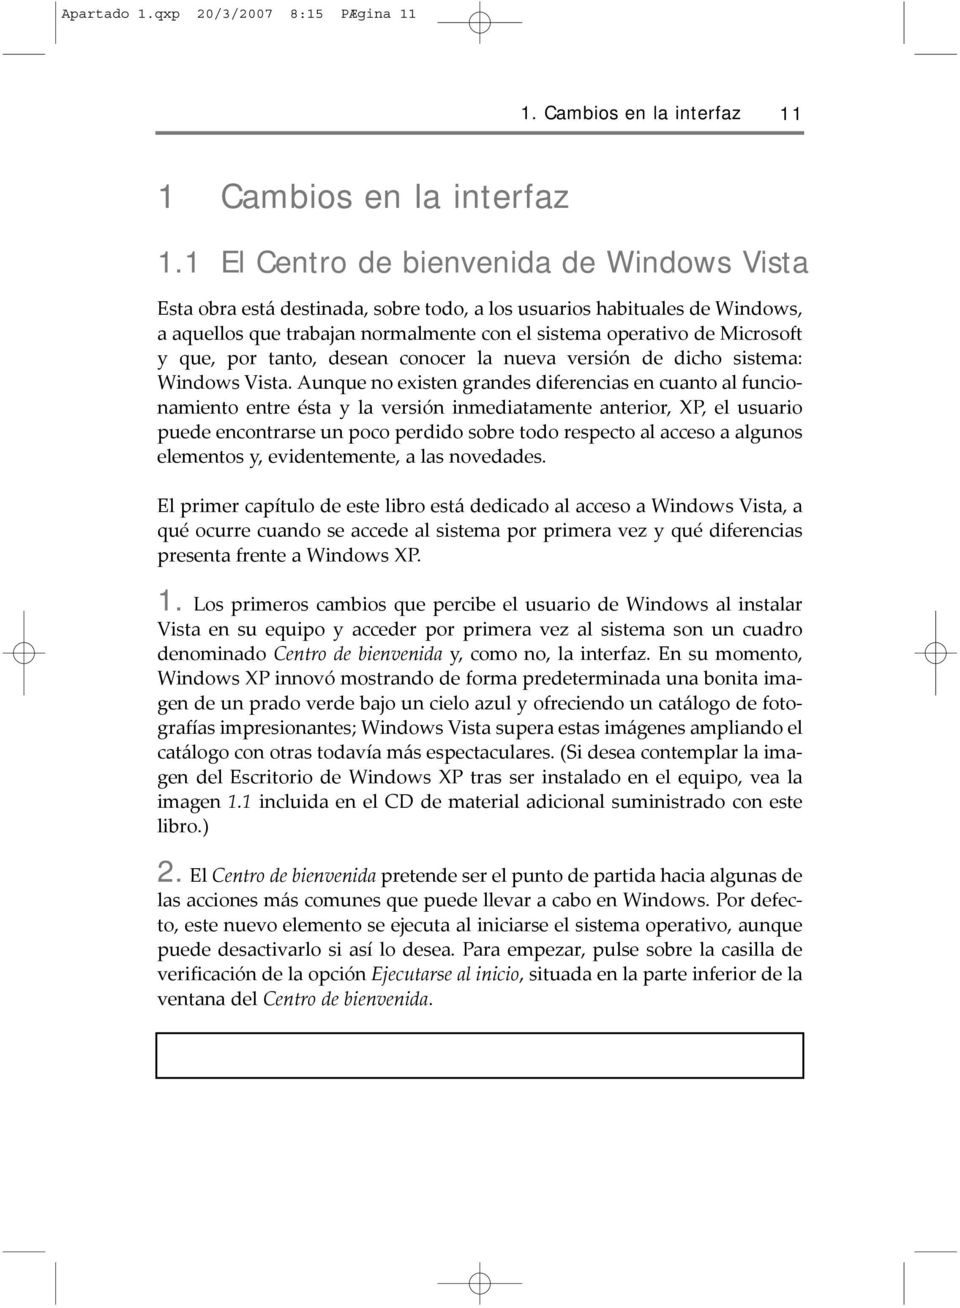 por tanto, desean conocer la nueva versión de dicho sistema: Windows Vista.